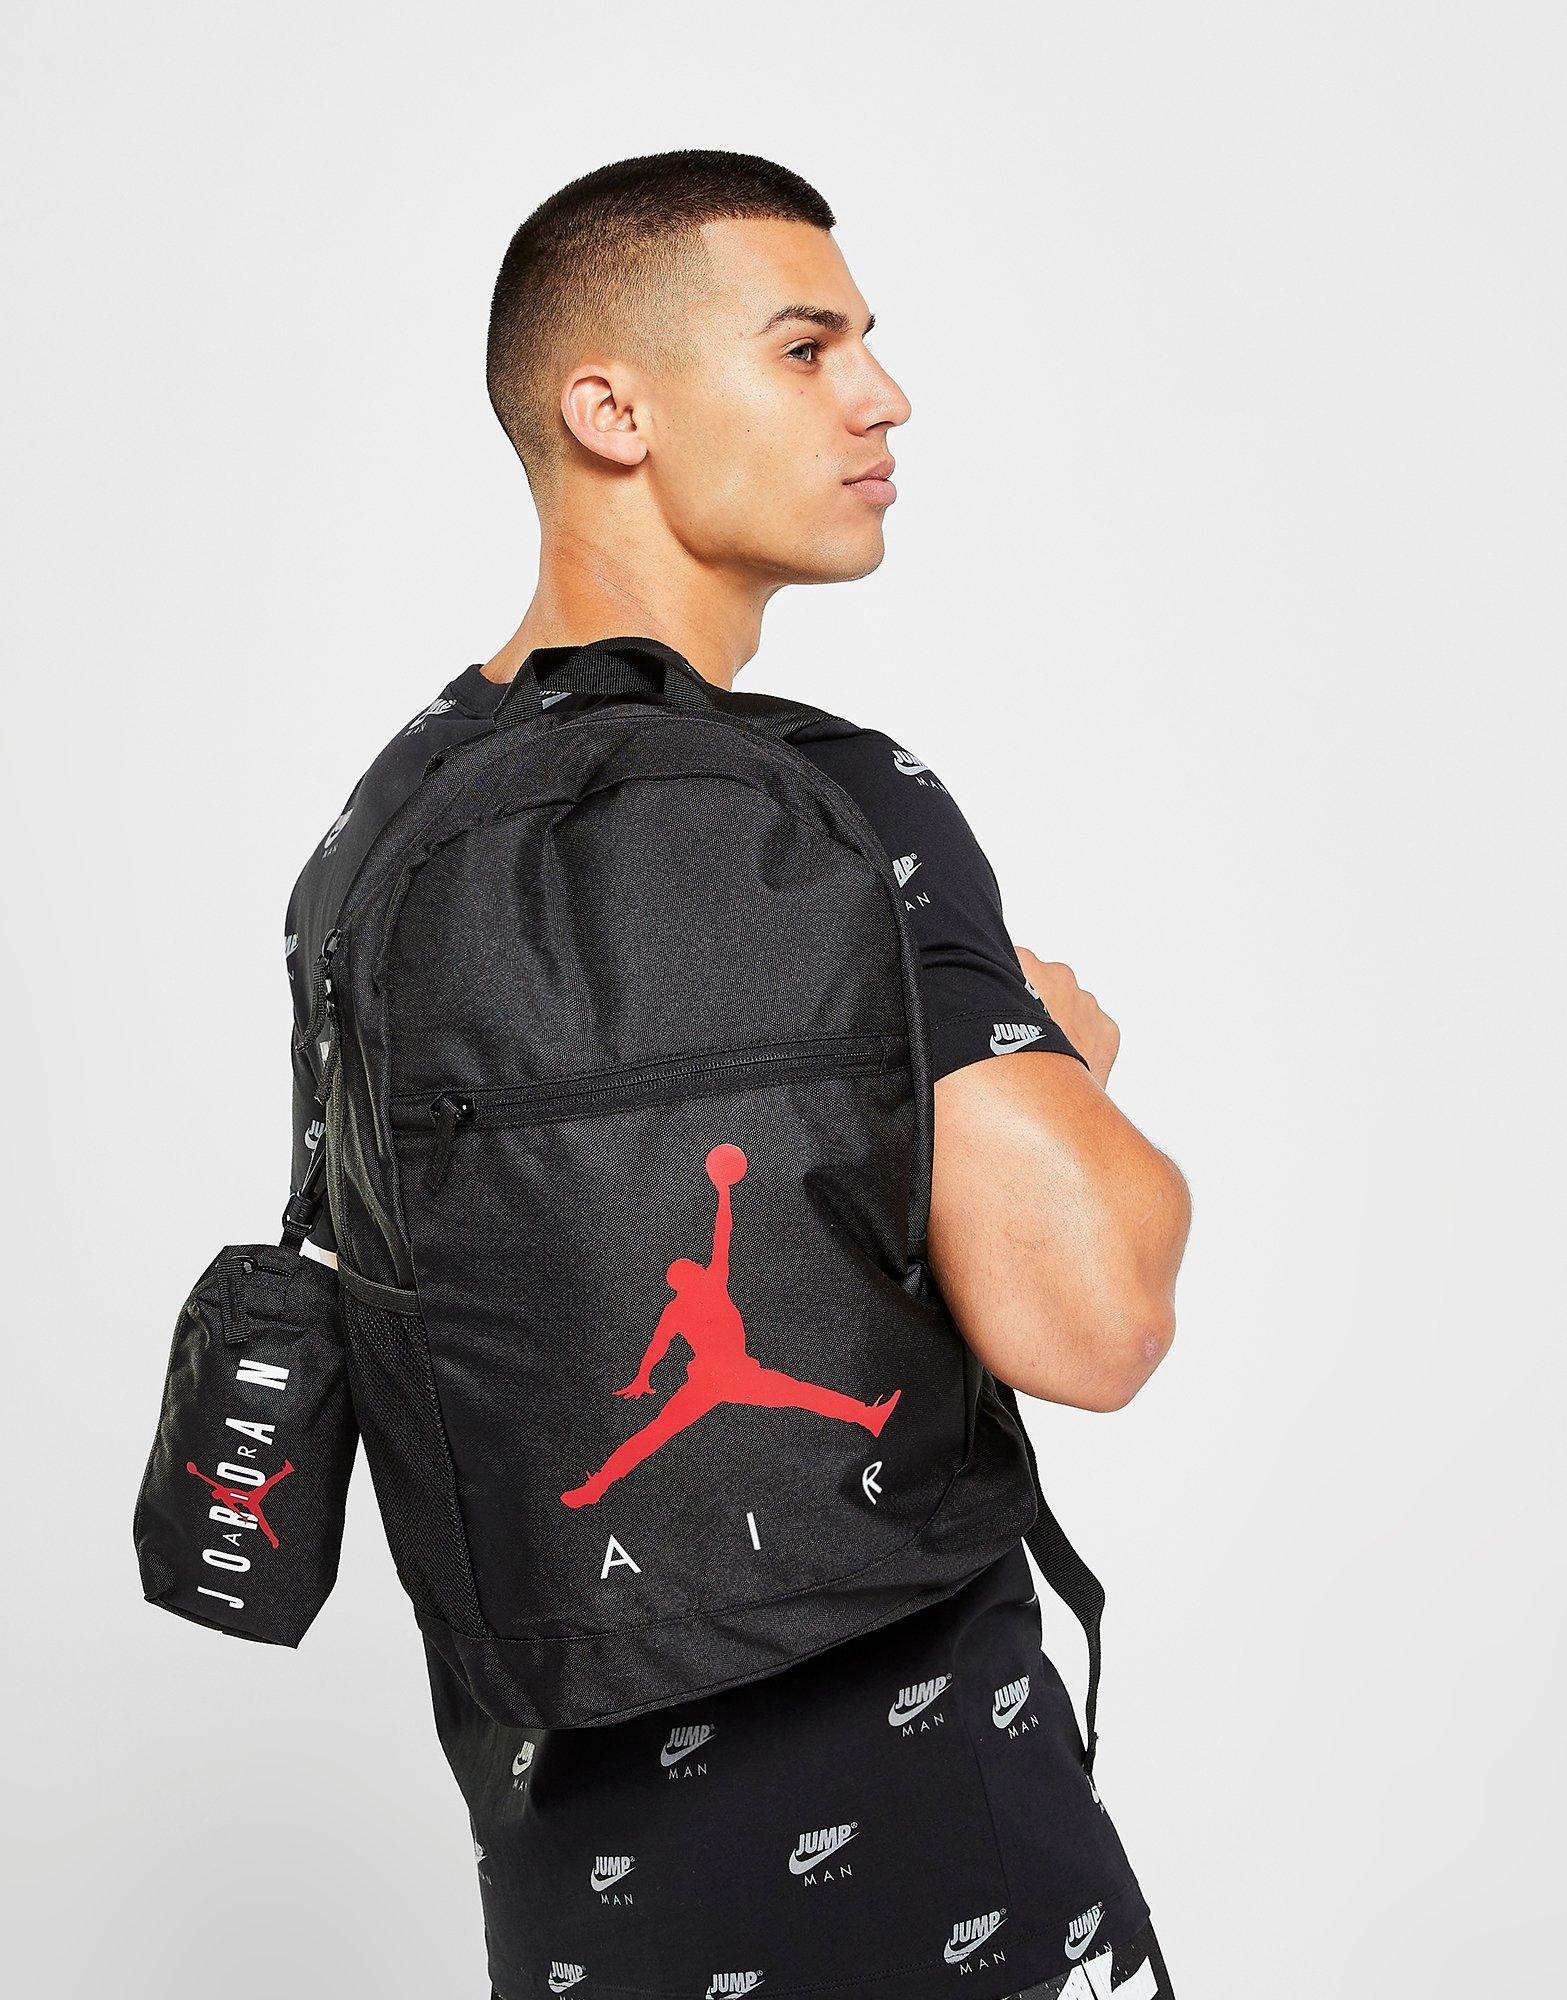 Jordan / Jumpman Tote Bag